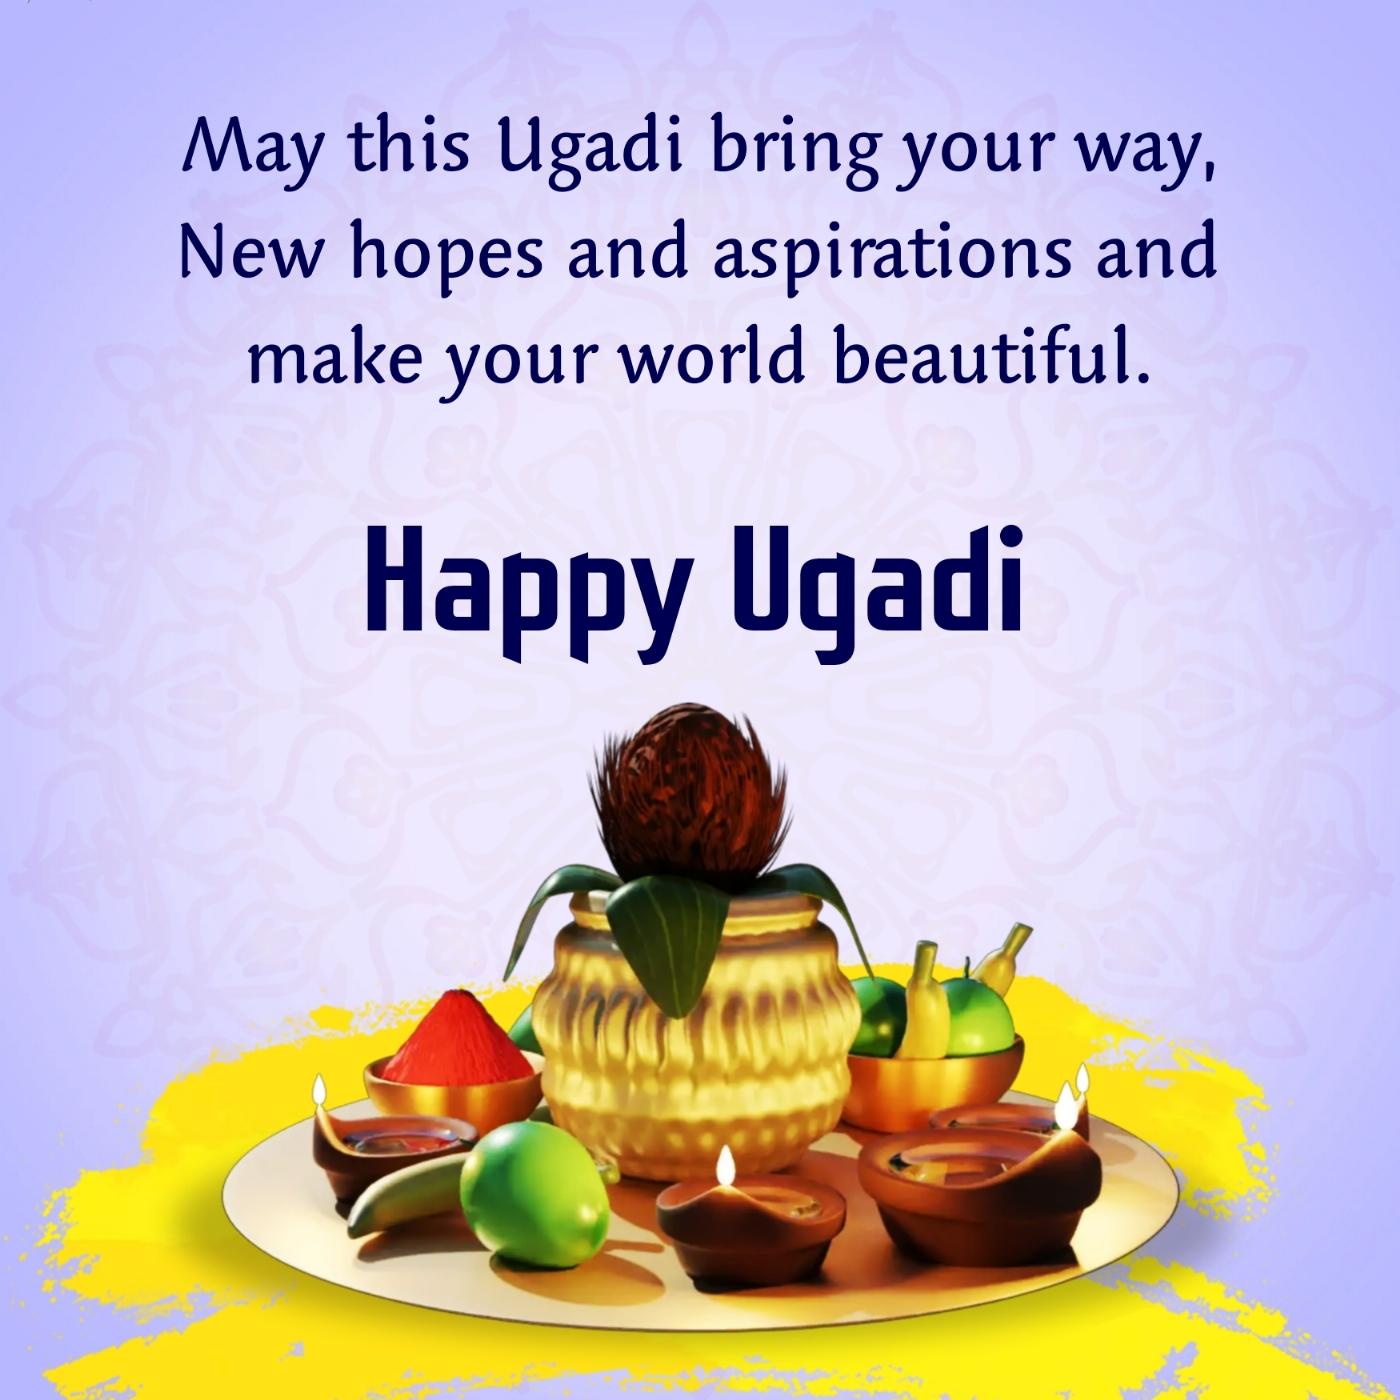 May this Ugadi bring your way New hopes and aspirations